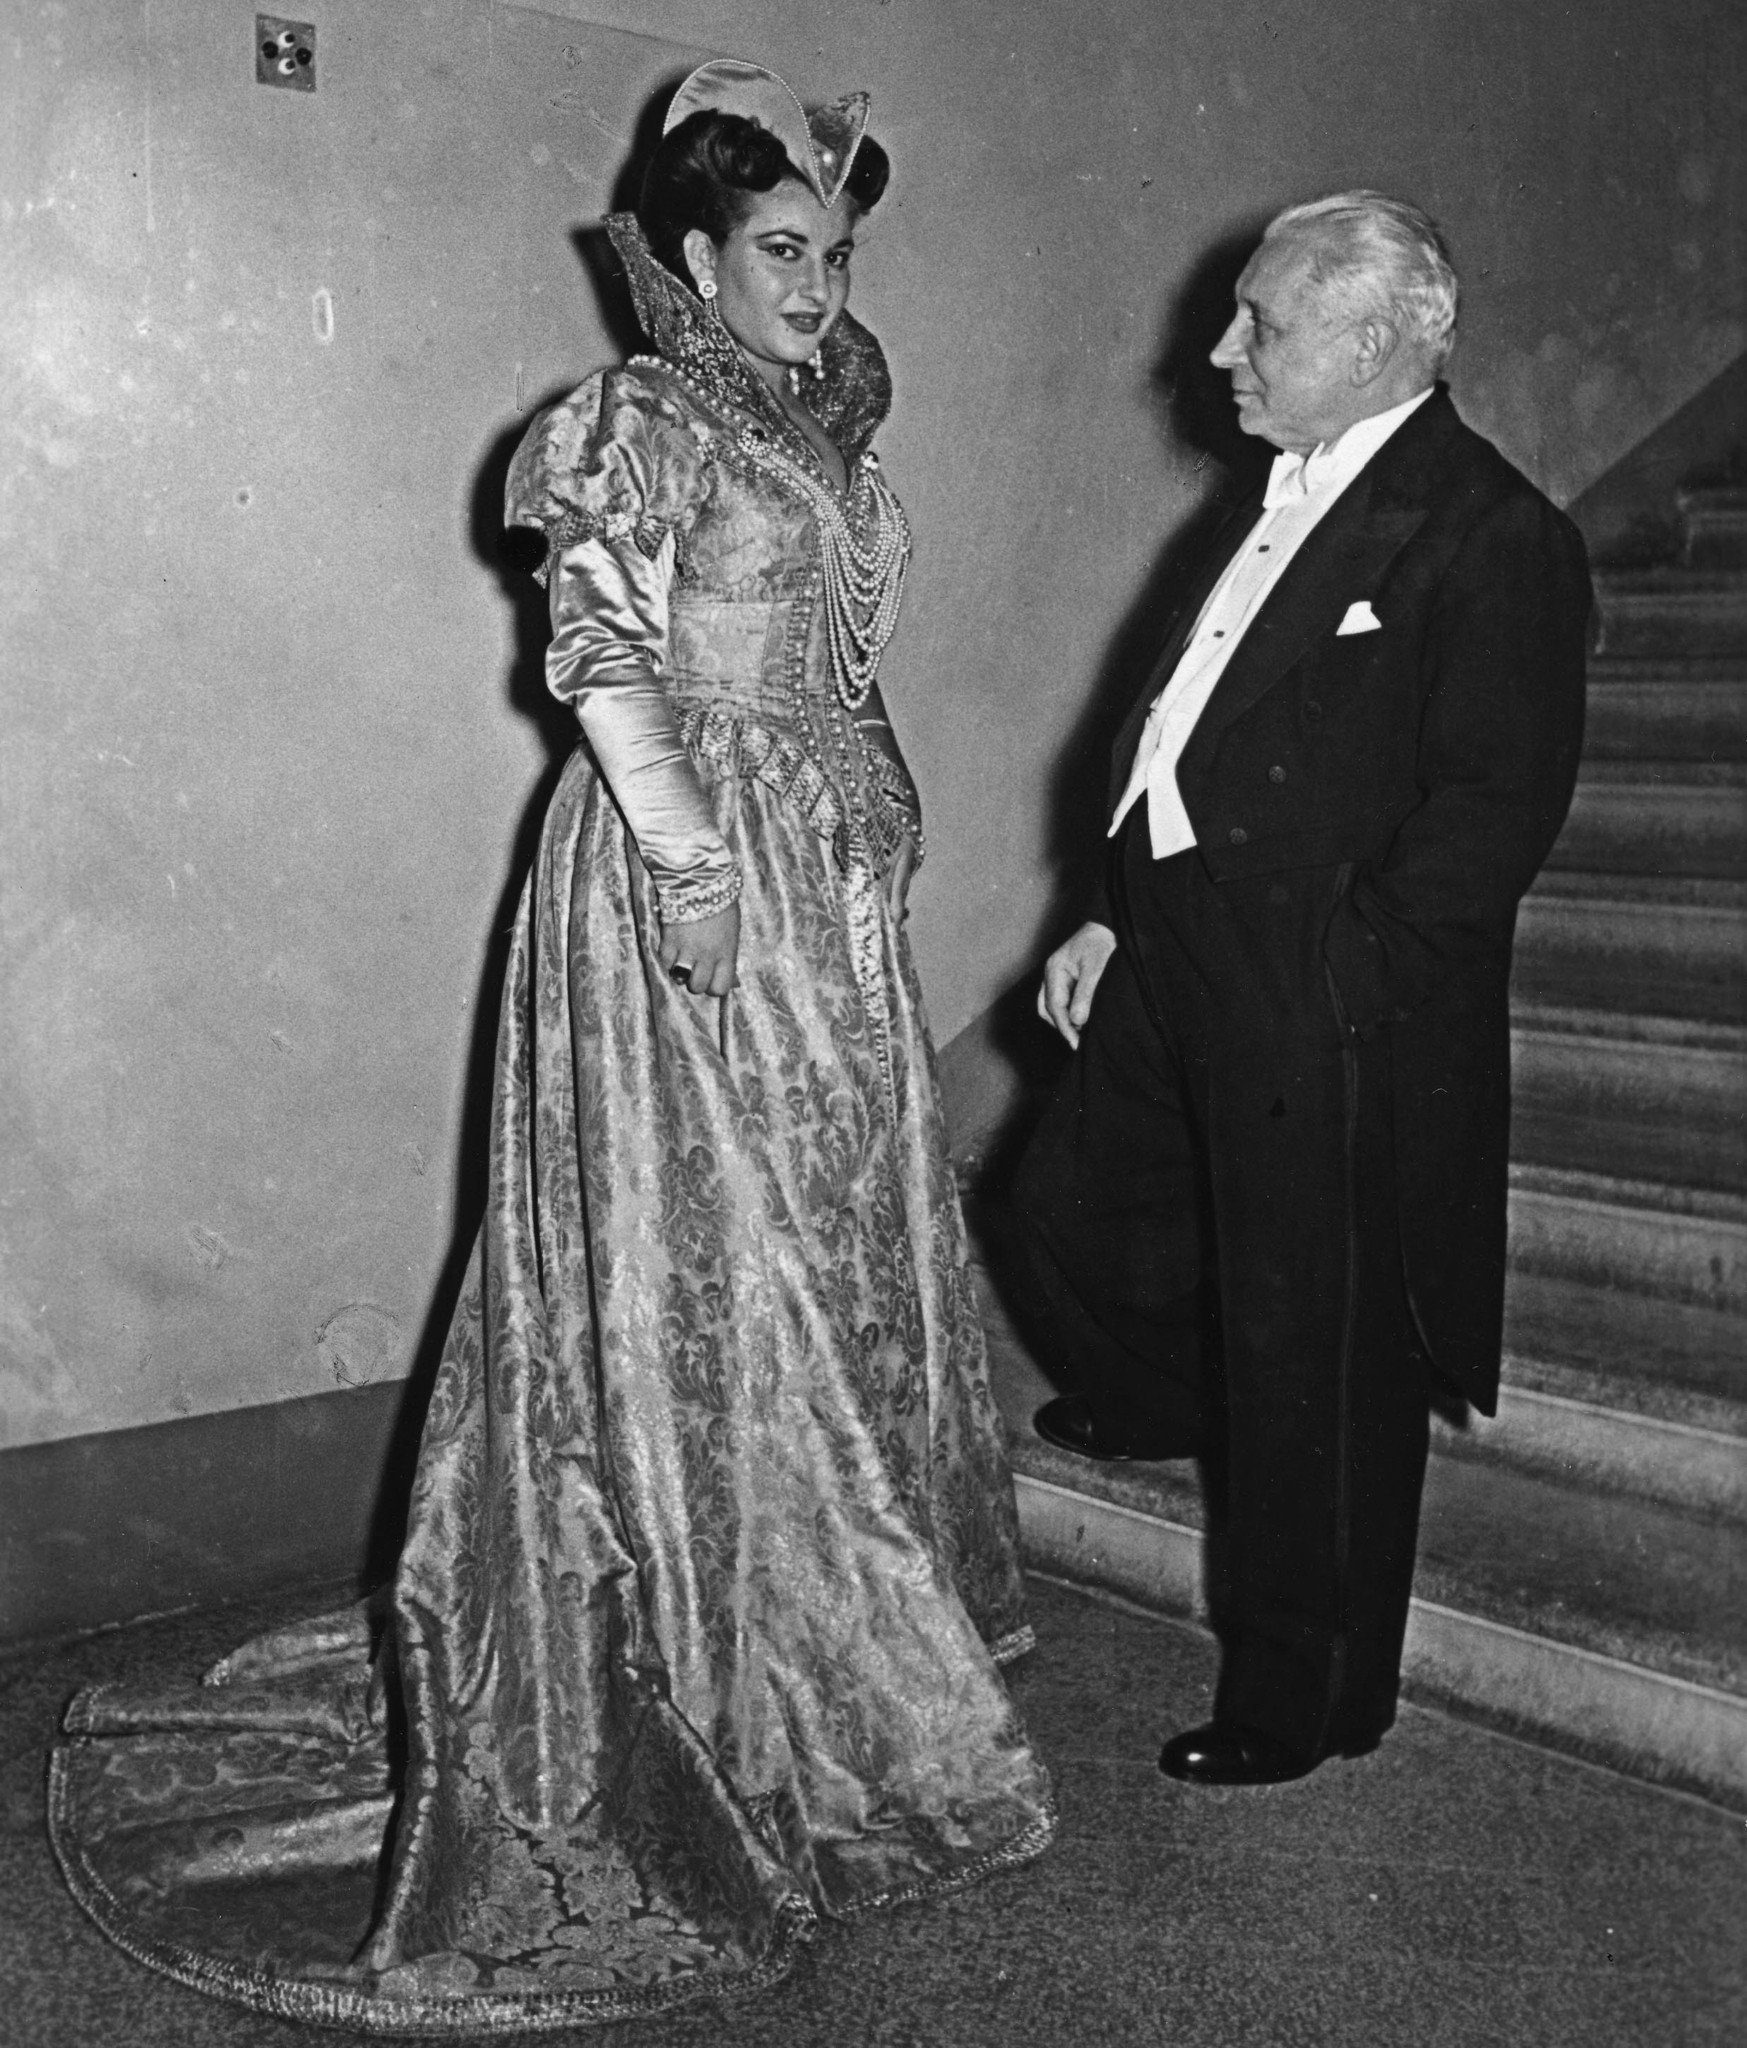 Αποκλειστικό: H όπερα Norma στο Ηρώδειο και το νέο Μουσείο Μαρία Κάλλας για τα 100 χρόνια από τη γέννησή της